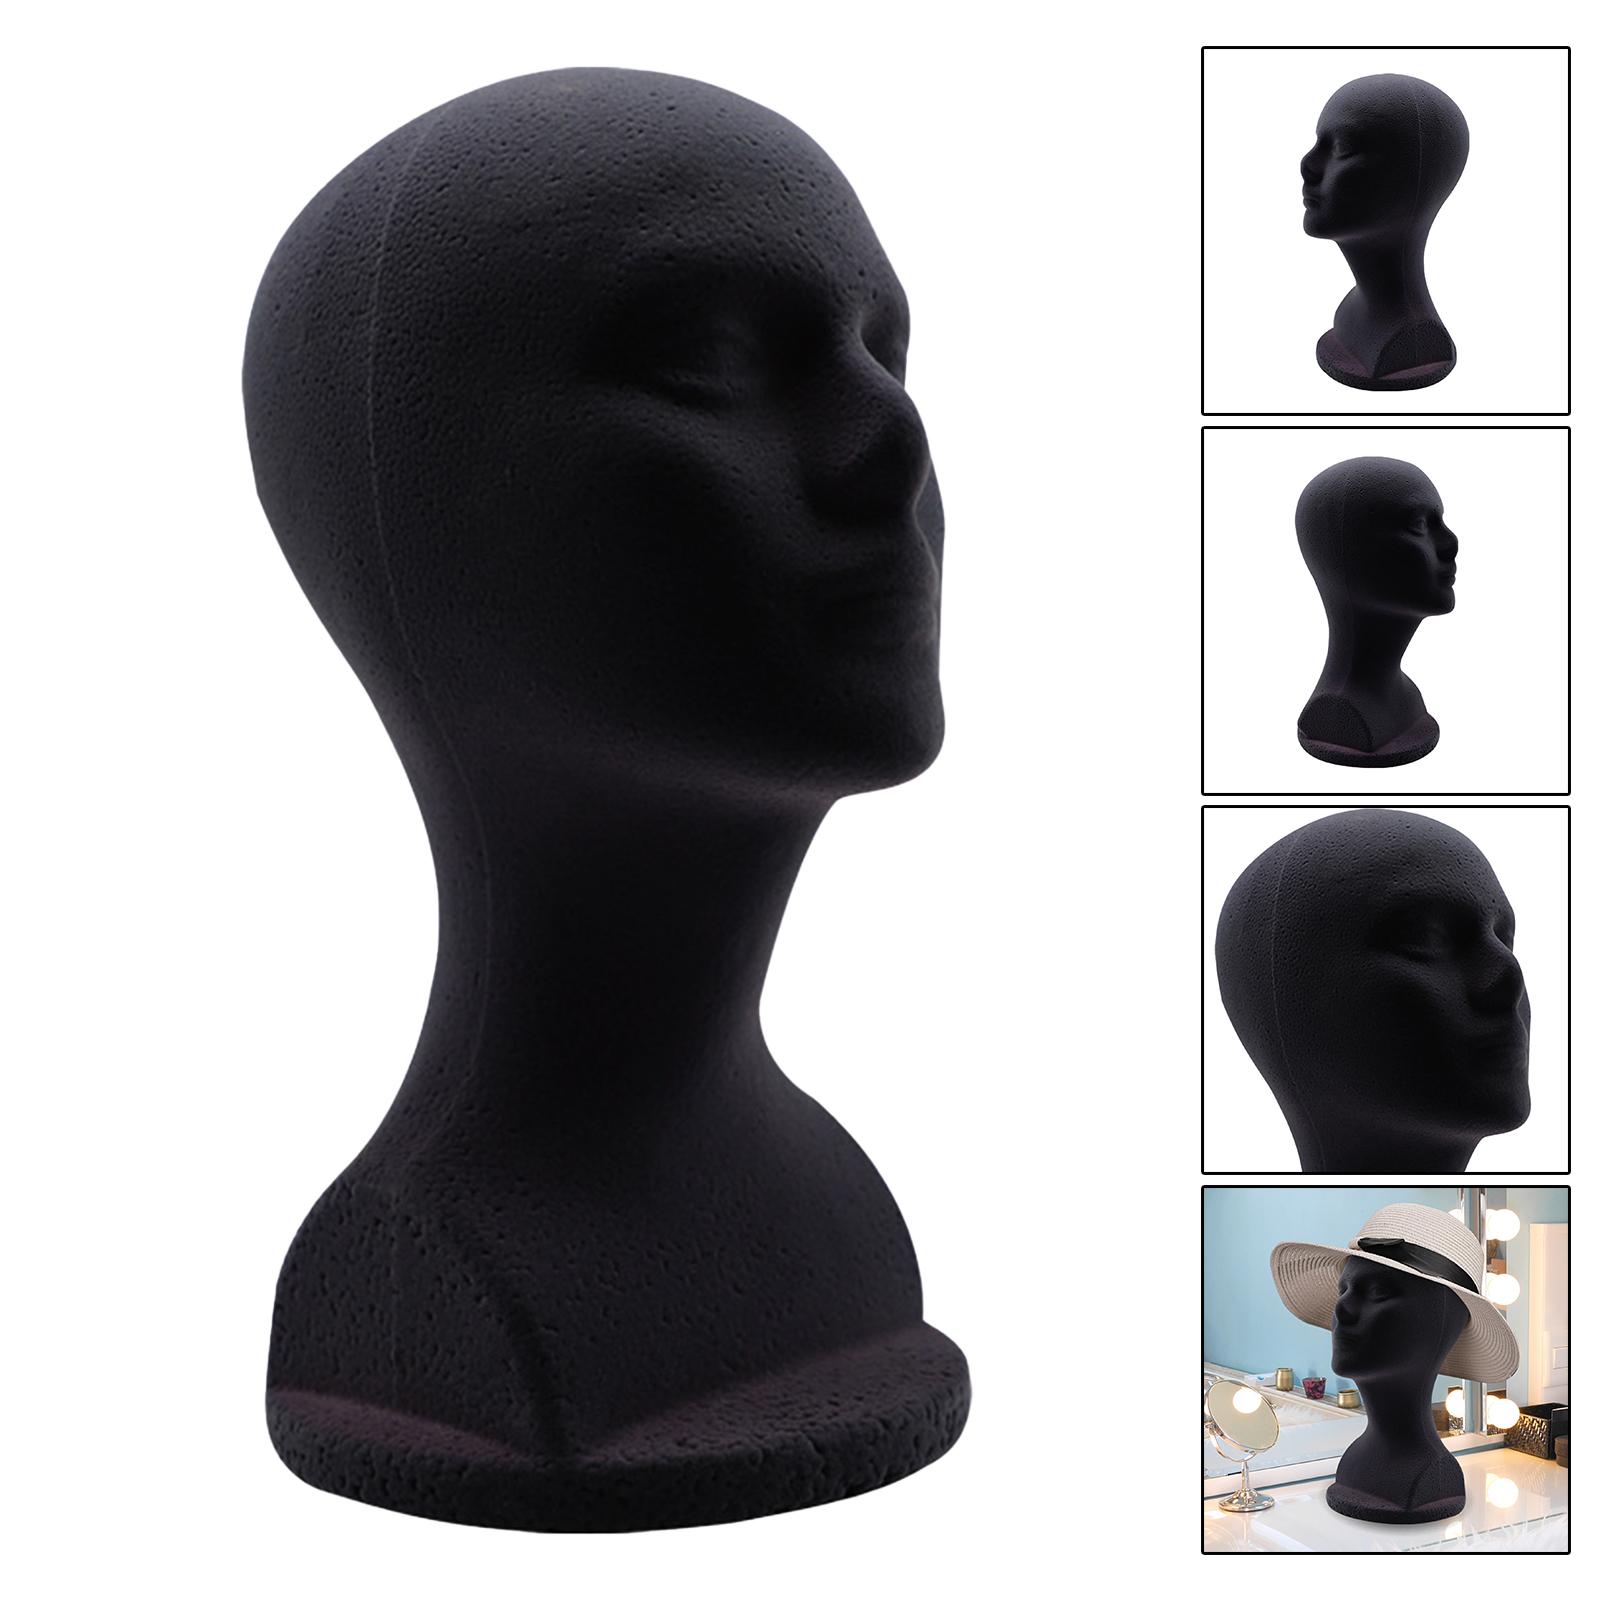 Mancofoam Mannequin Head Model Hat Stand Stand Black 48,5 cm Accessori circonferenza della testa 12,6 pollici basi stabilite alti fai -da -te